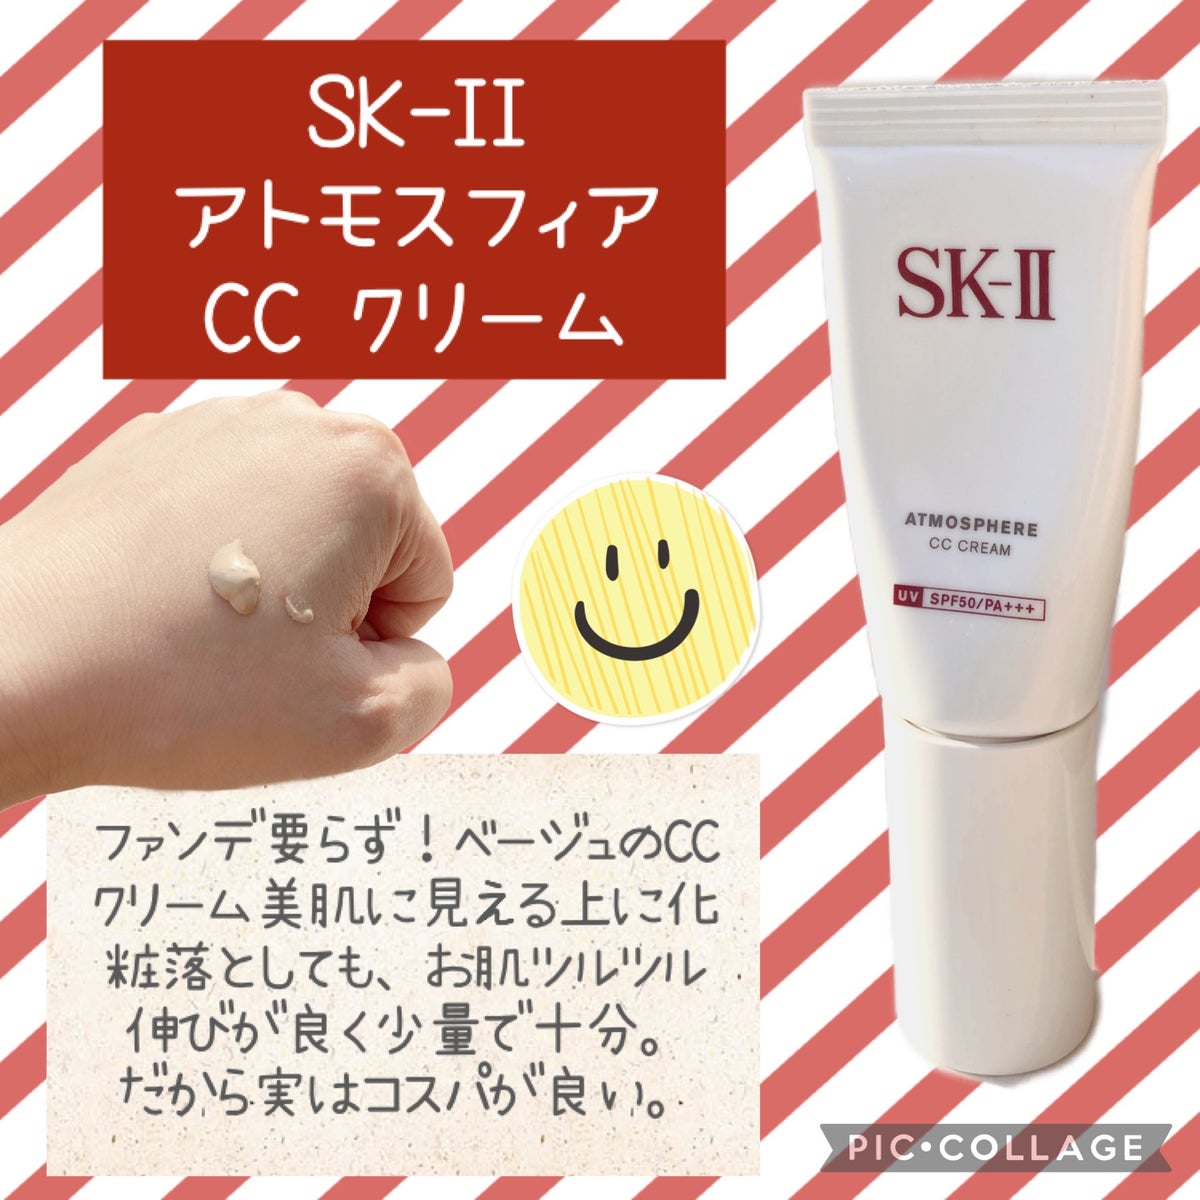 SKⅡ CCクリーム 薬用美白美容液